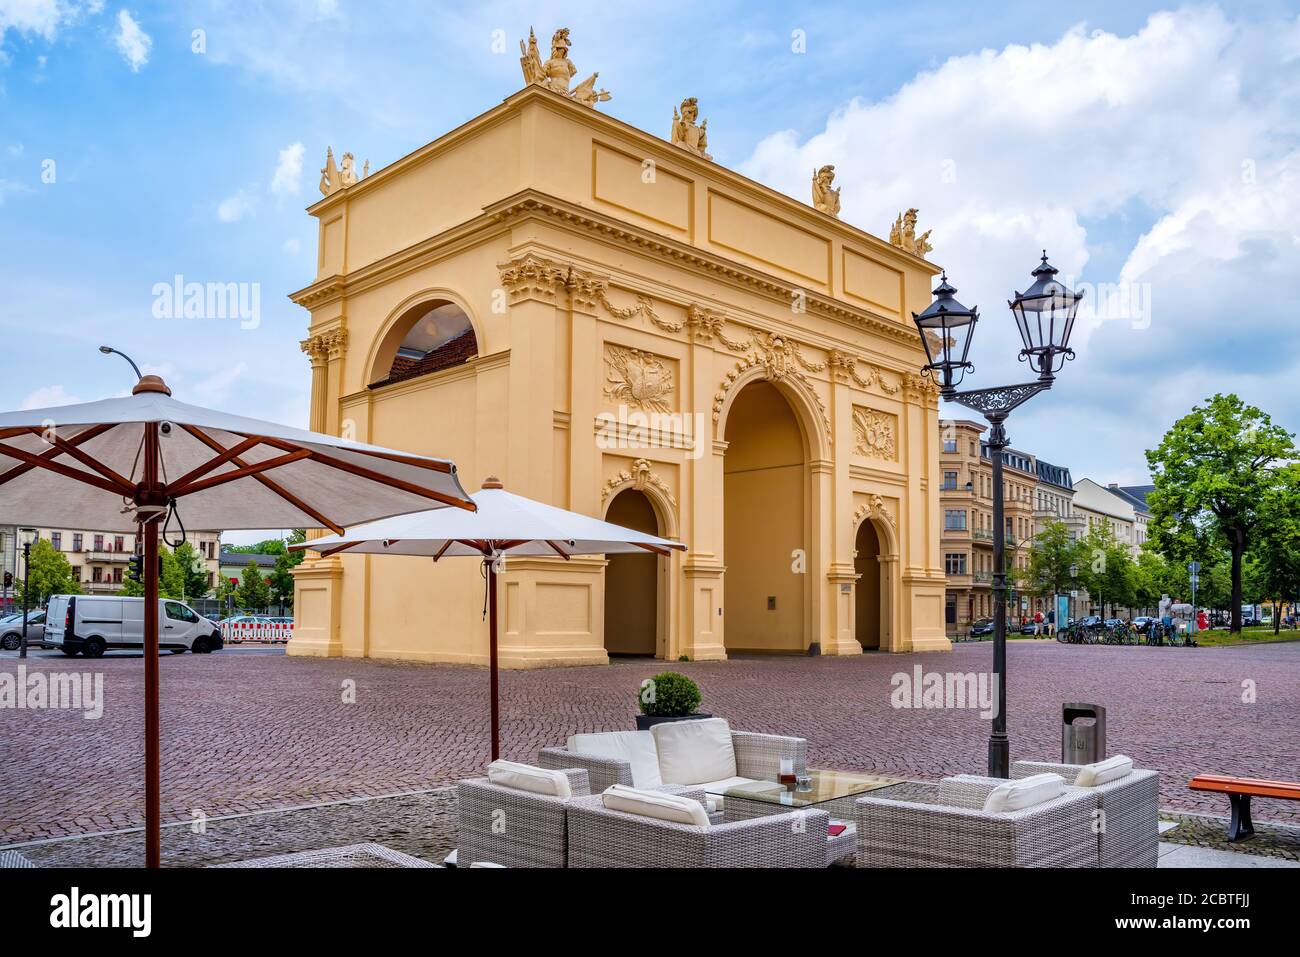 La porta di Brandeburgo (in tedesco: Brandenburger Tor) sulla Luisenplatz a Potsdam Foto Stock